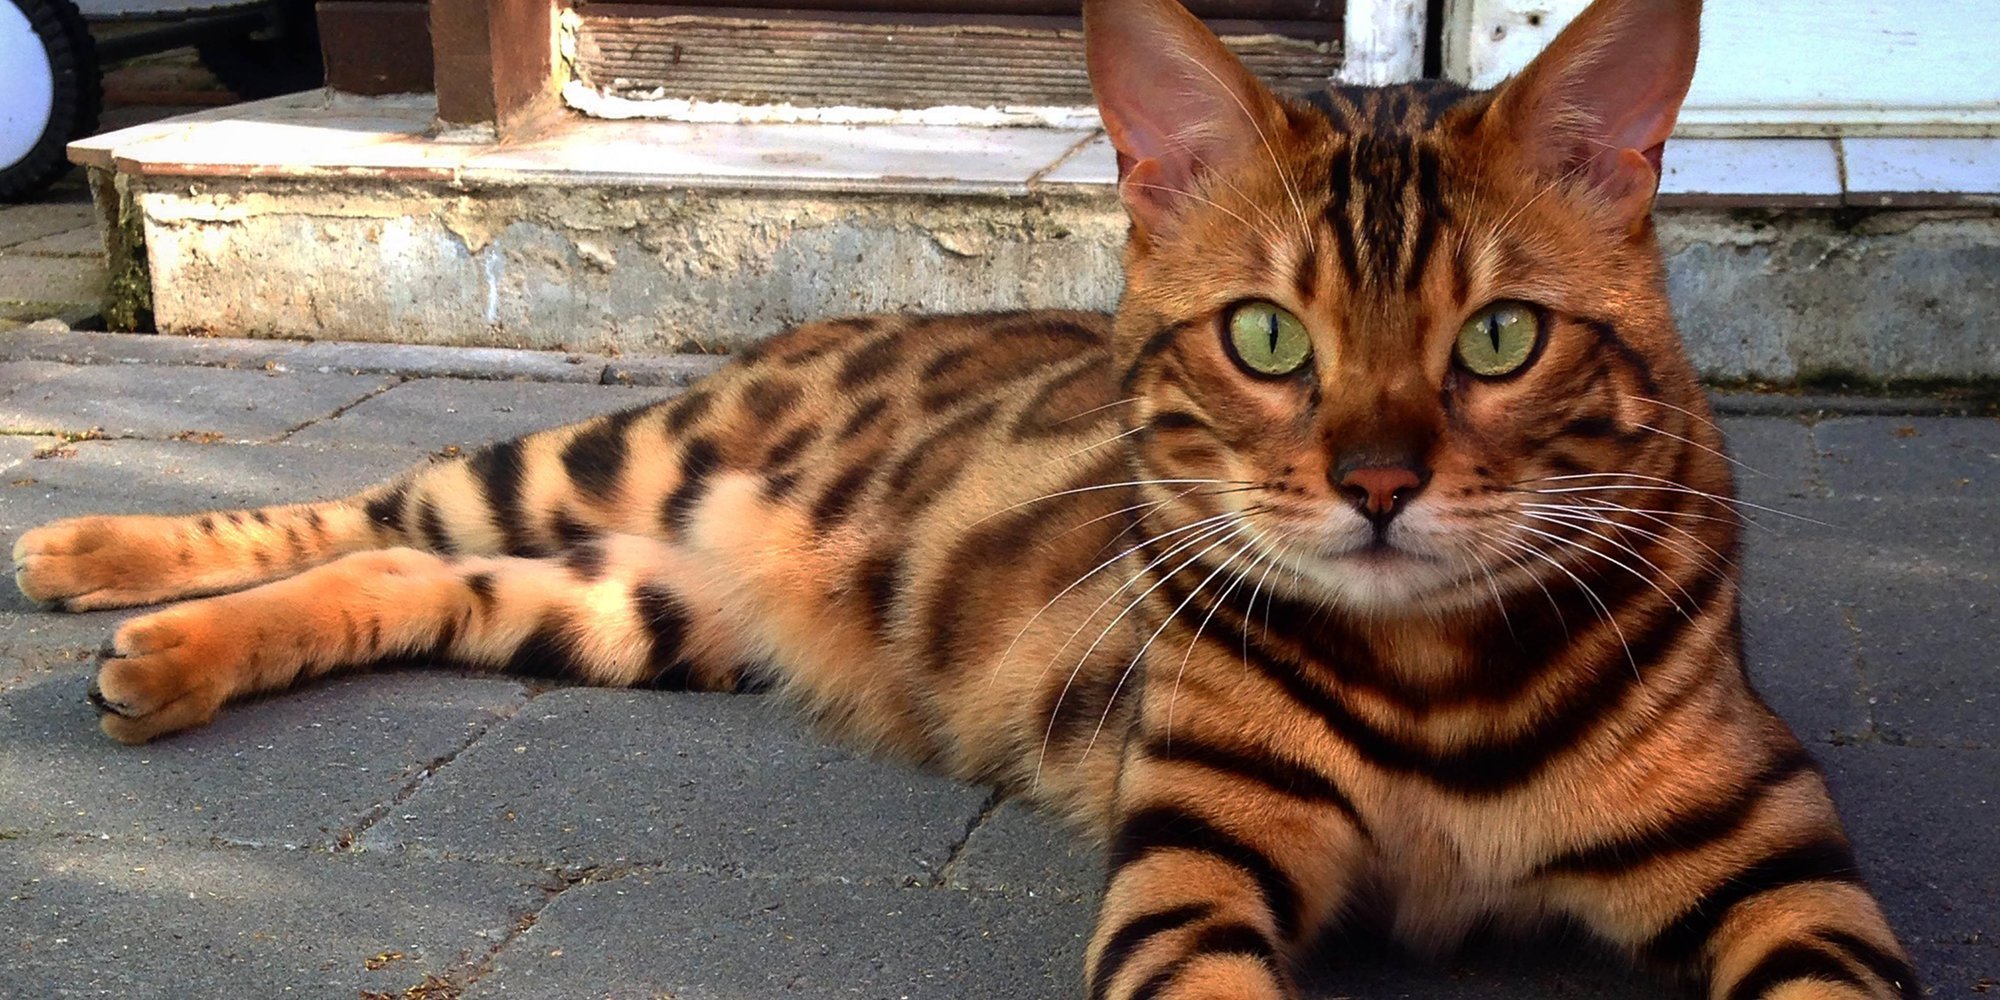 Азиатская леопардовая кошка: усатый охотник из тропиков